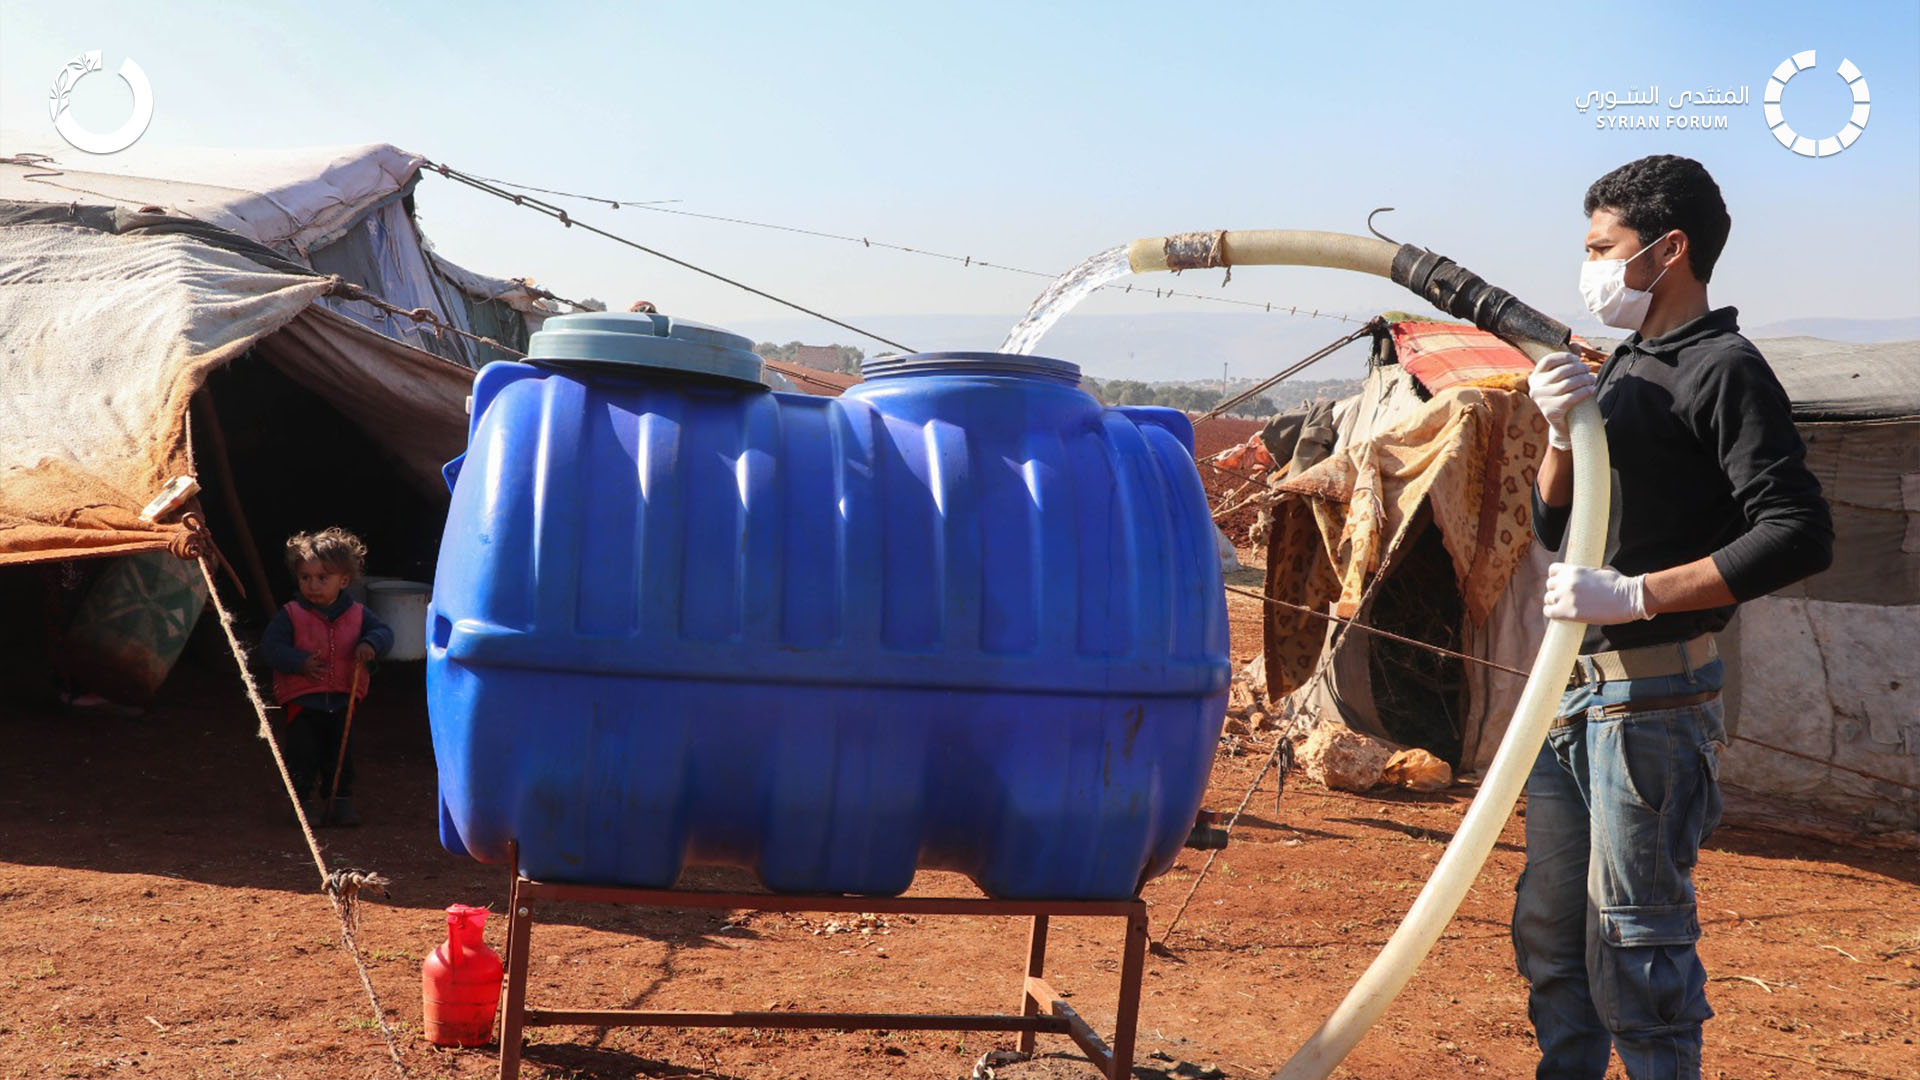 (العربية) أزمة مياه الشرب تجتاح مخيمات الشمال السوري وتهدد حياة الآلاف